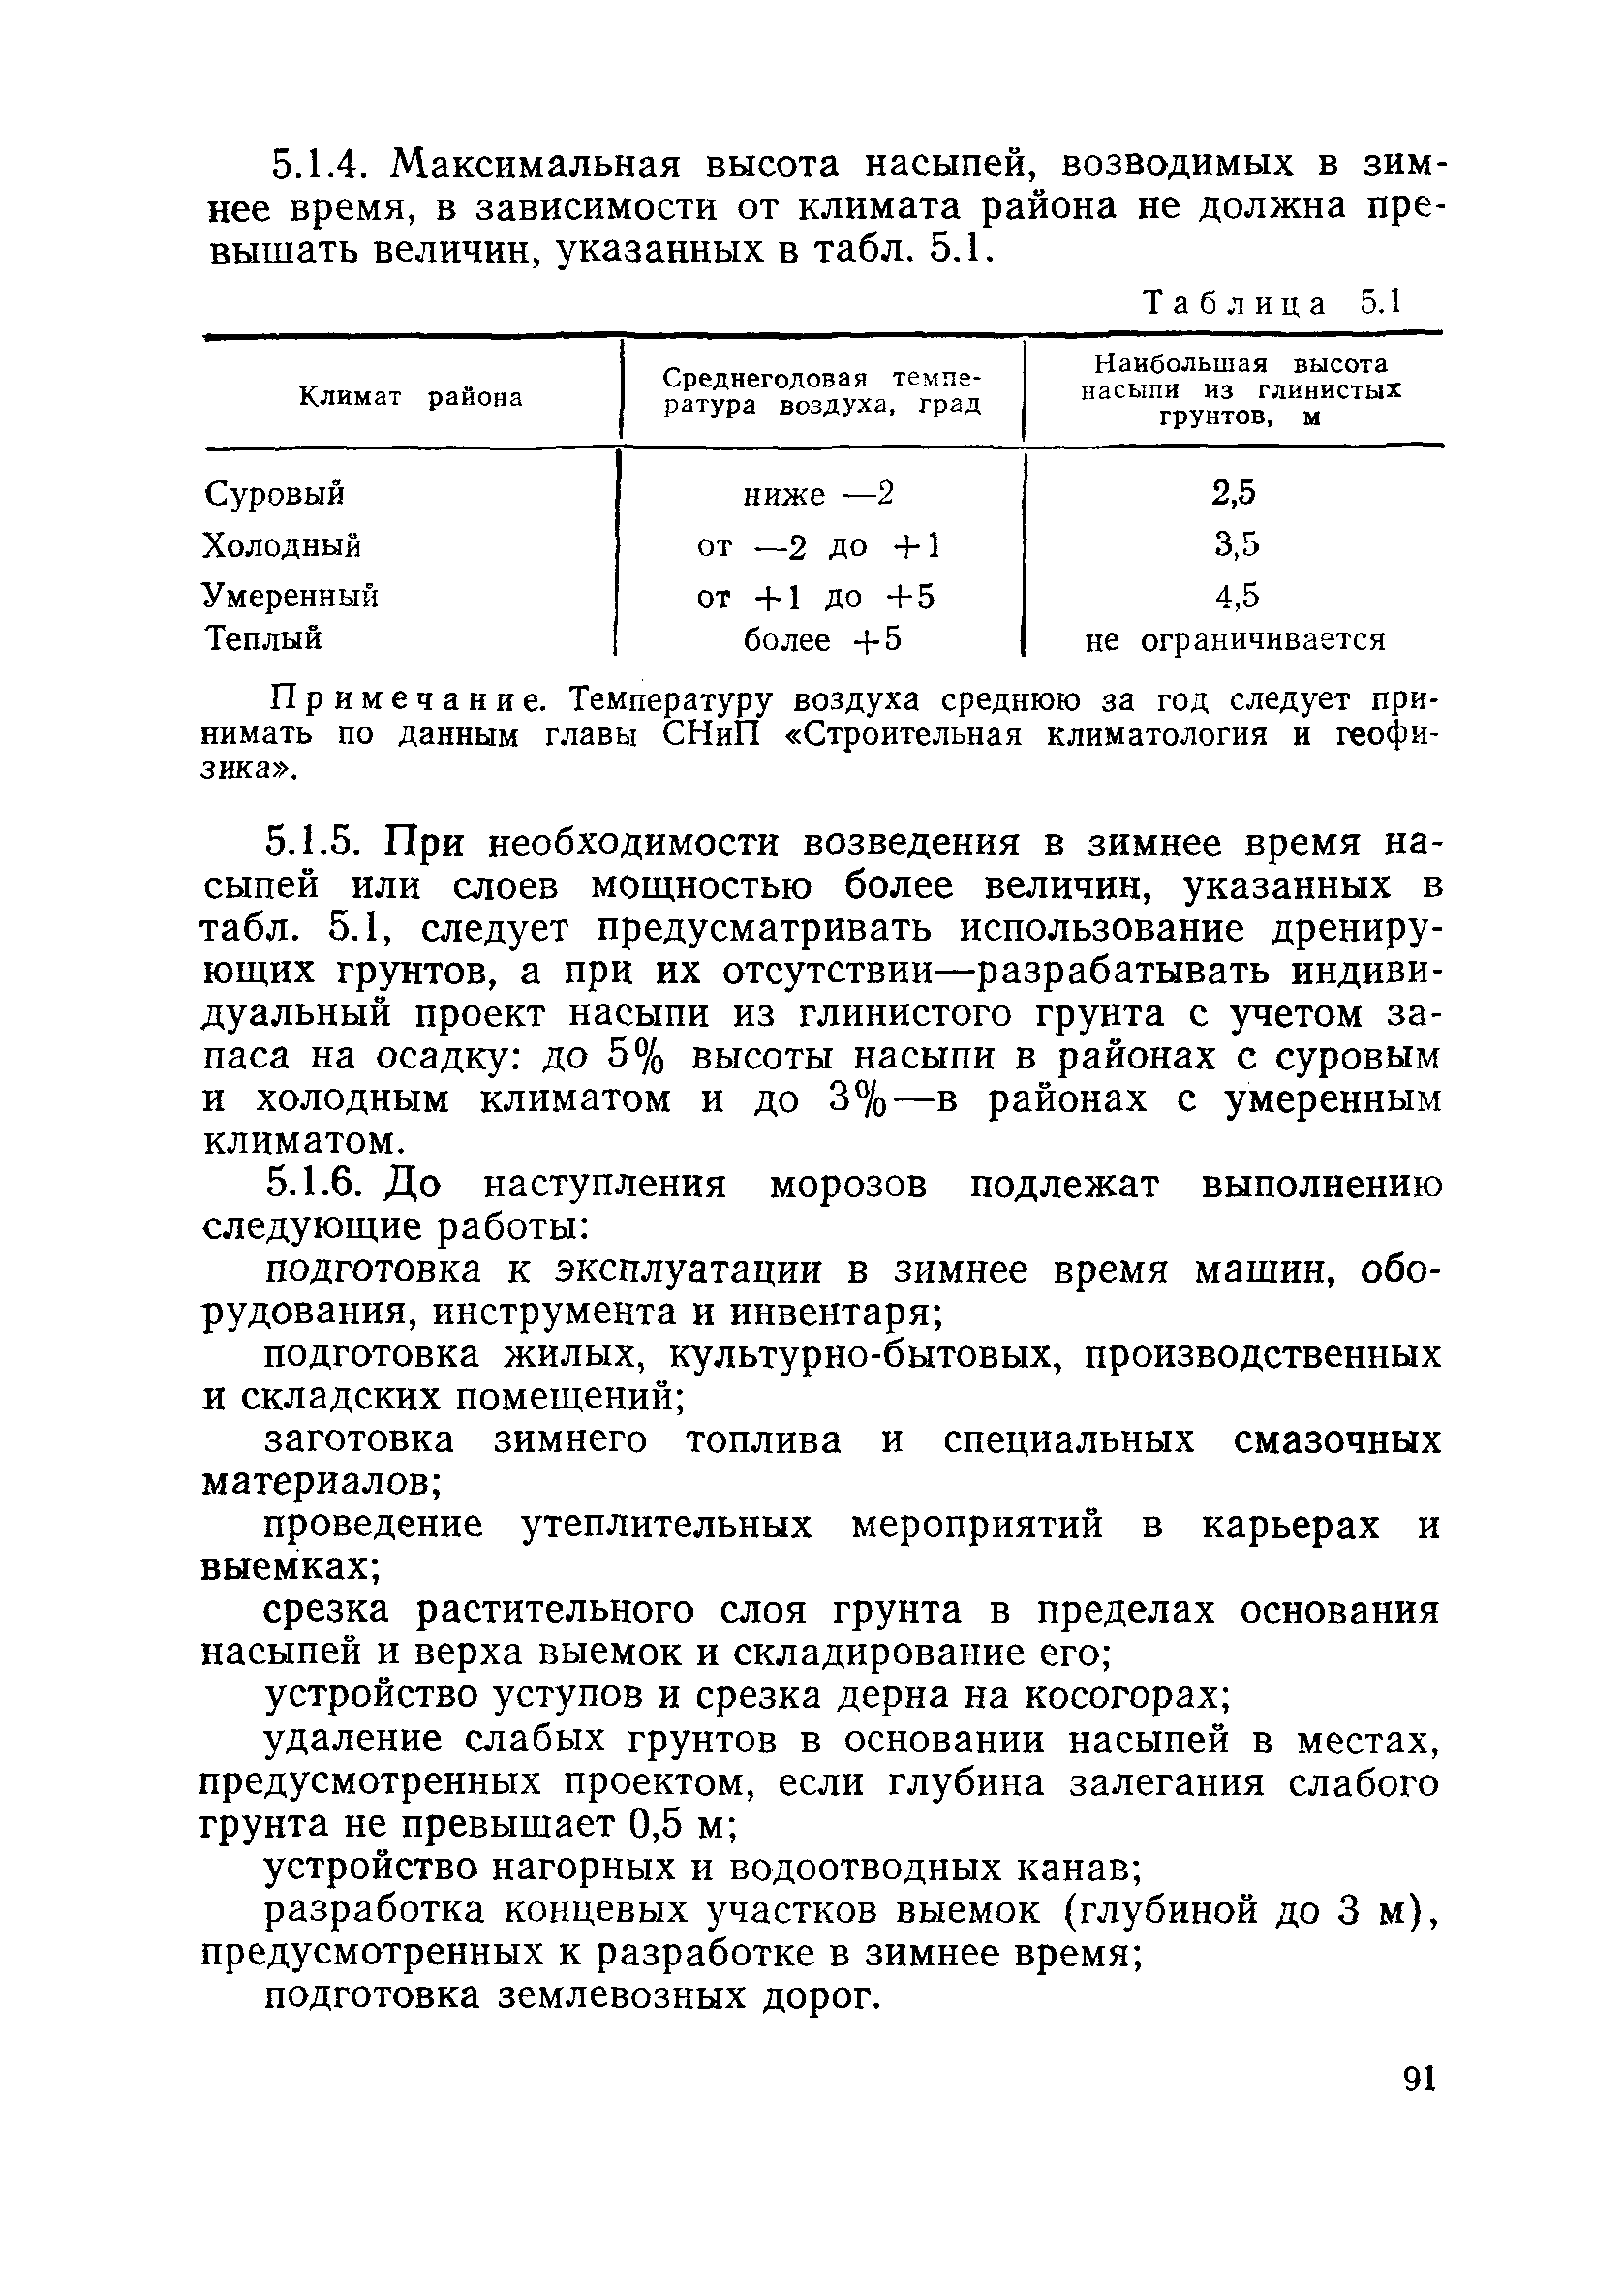 Пособие в развитие СНиП 3.06.02-86